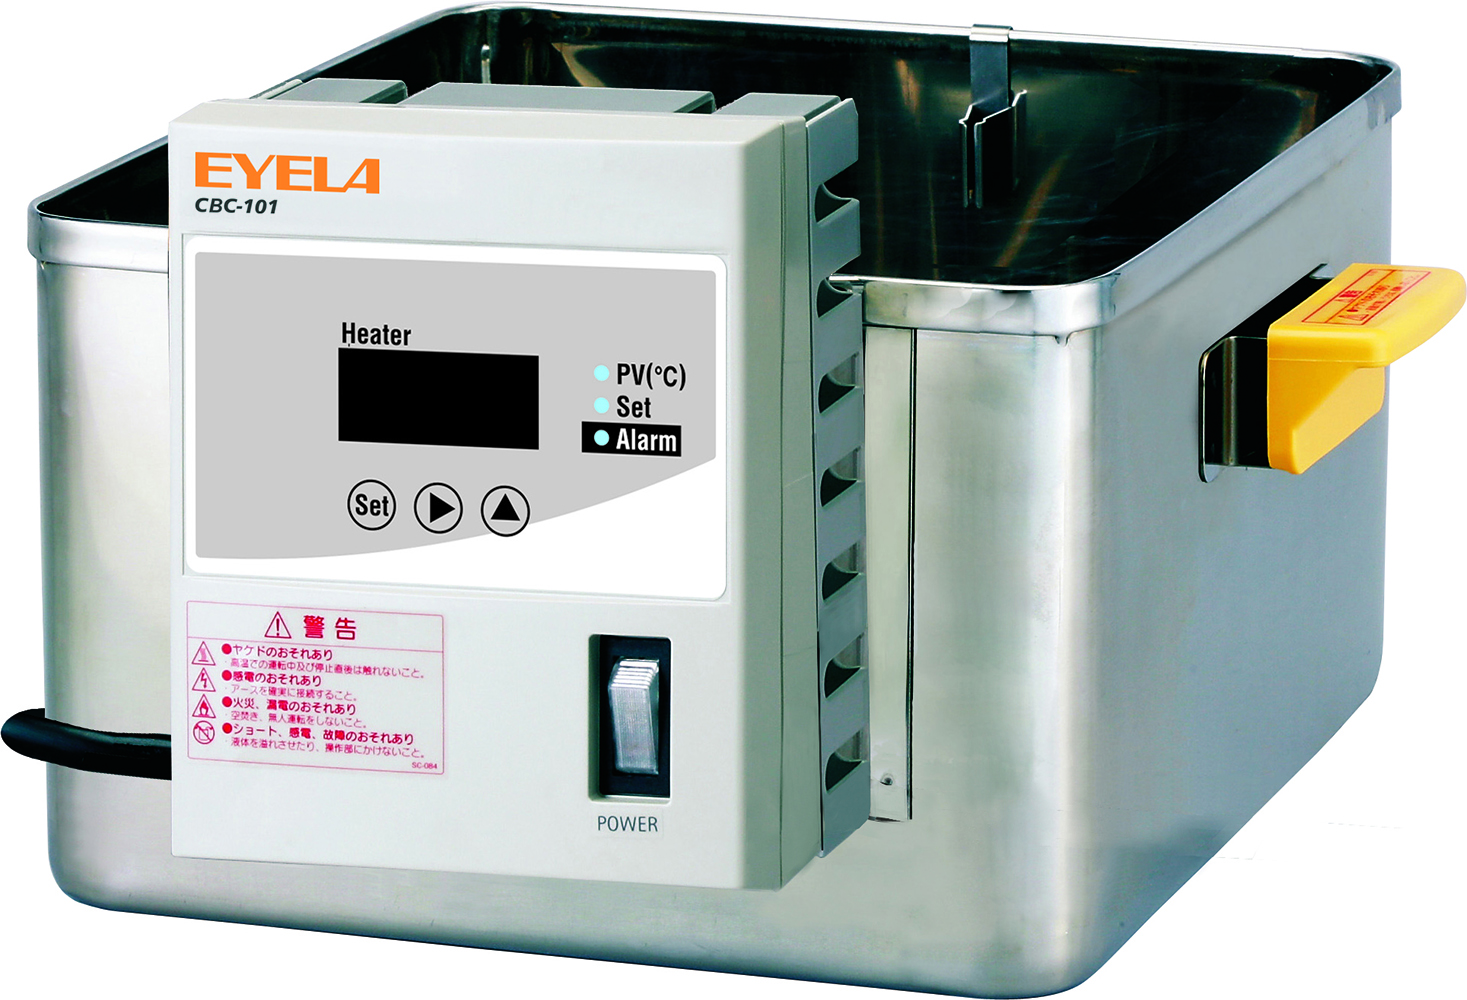 低温槽・恒温槽｜恒温水槽 | 製品情報 | EYELA 東京理化器械株式会社